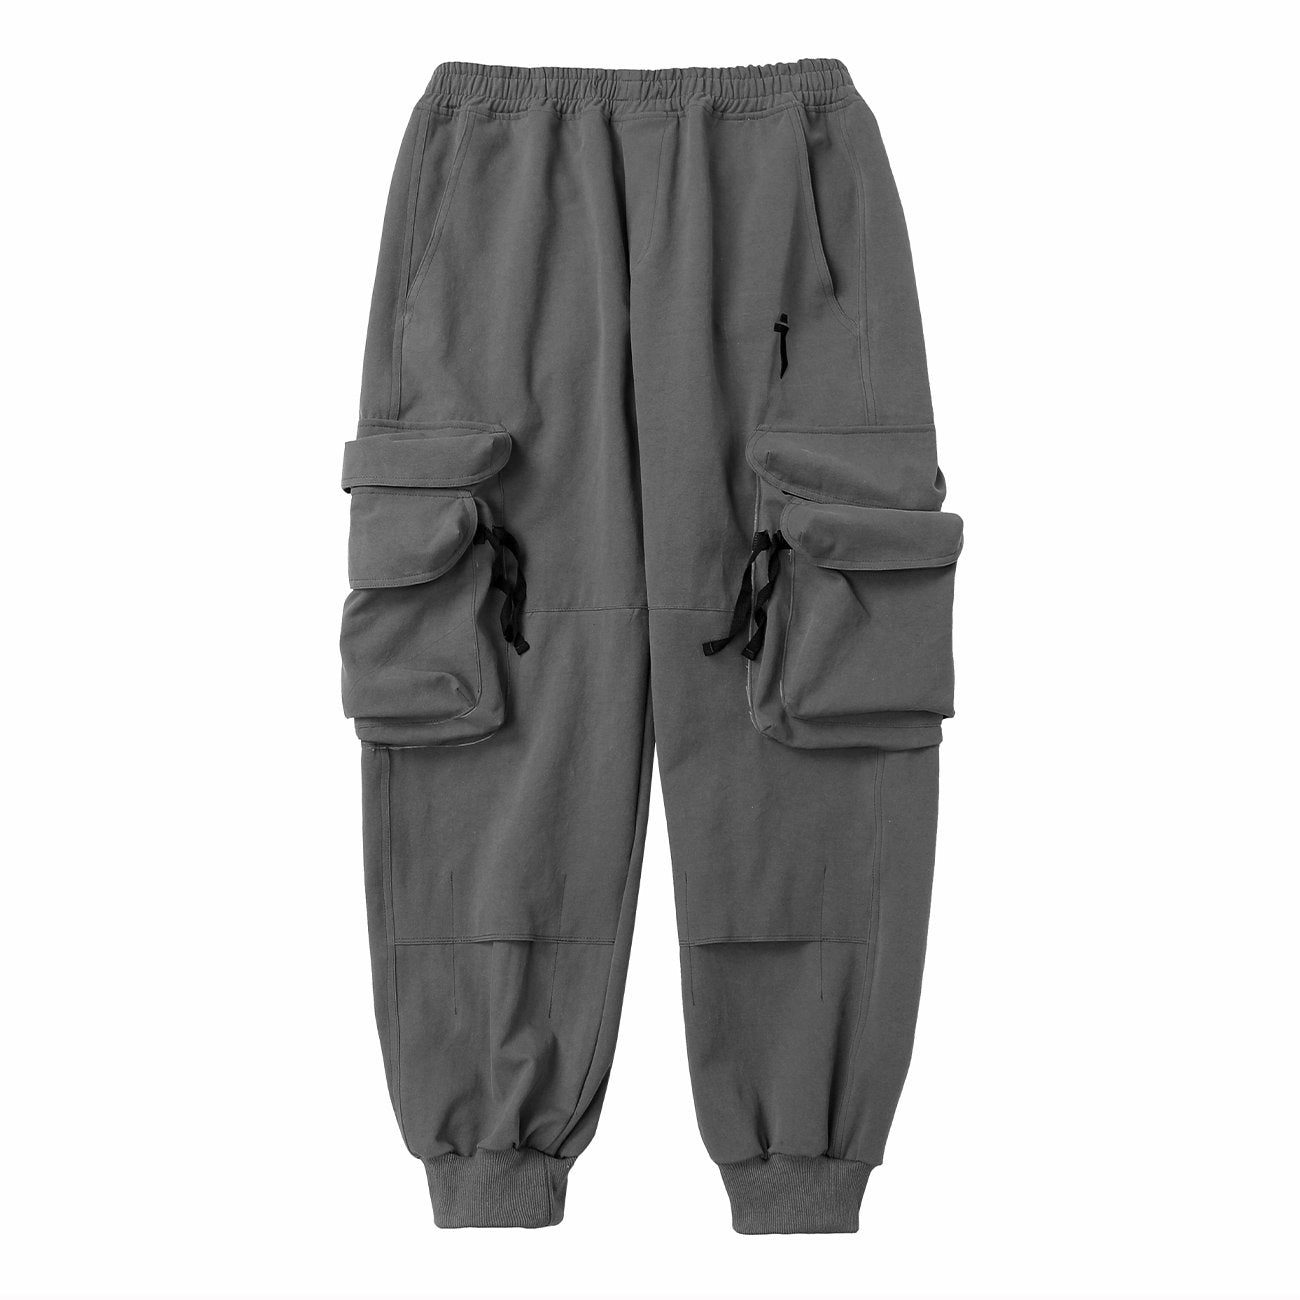 Techwear Multi Pockets Cargo Pants Streetwear Brand Techwear Combat Tactical YUGEN THEORY